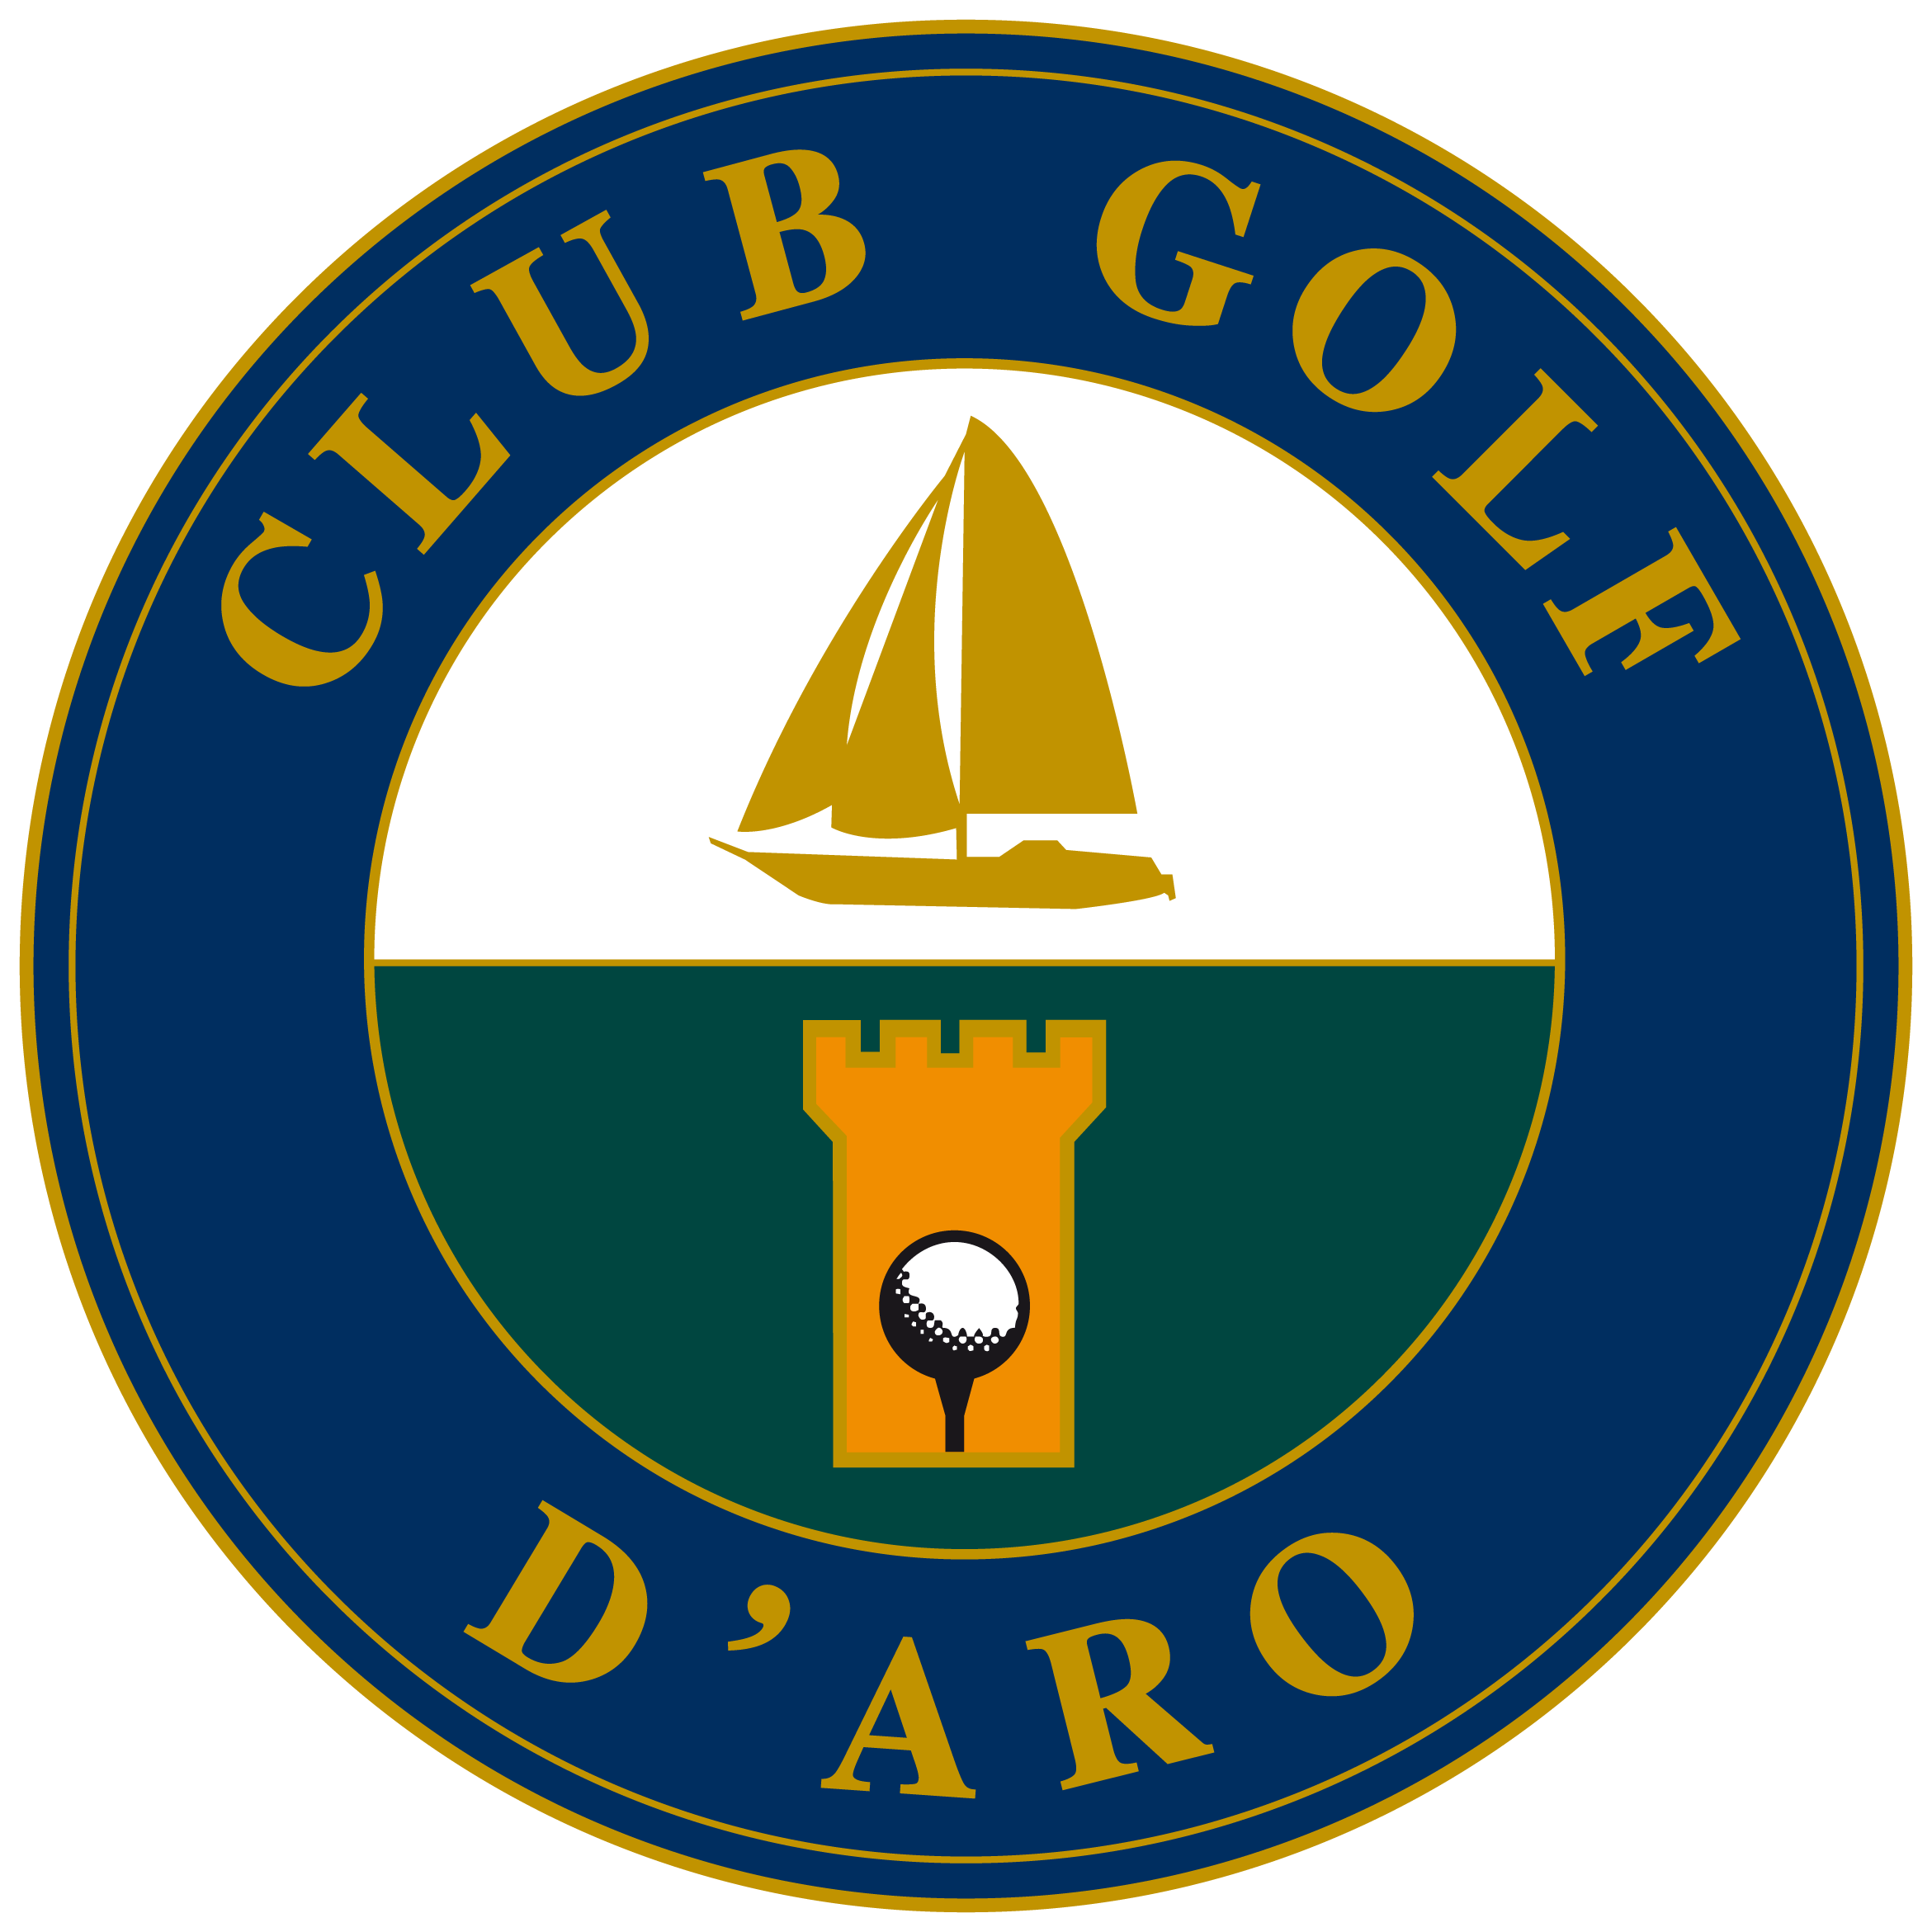 Club de Golf Aro - Mas Nou